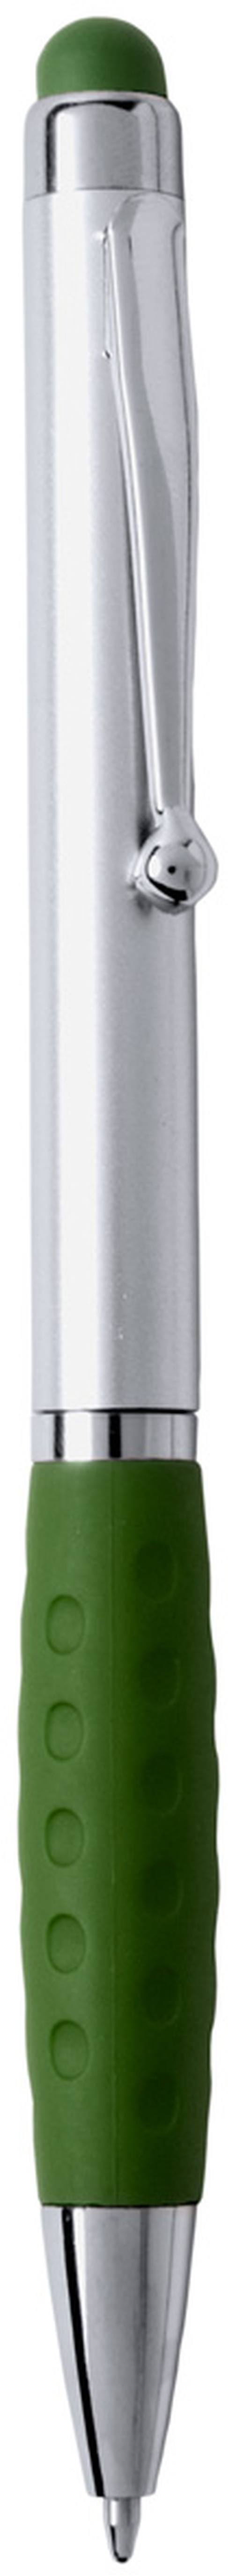 Sagursilver dotykové kuličkové pero